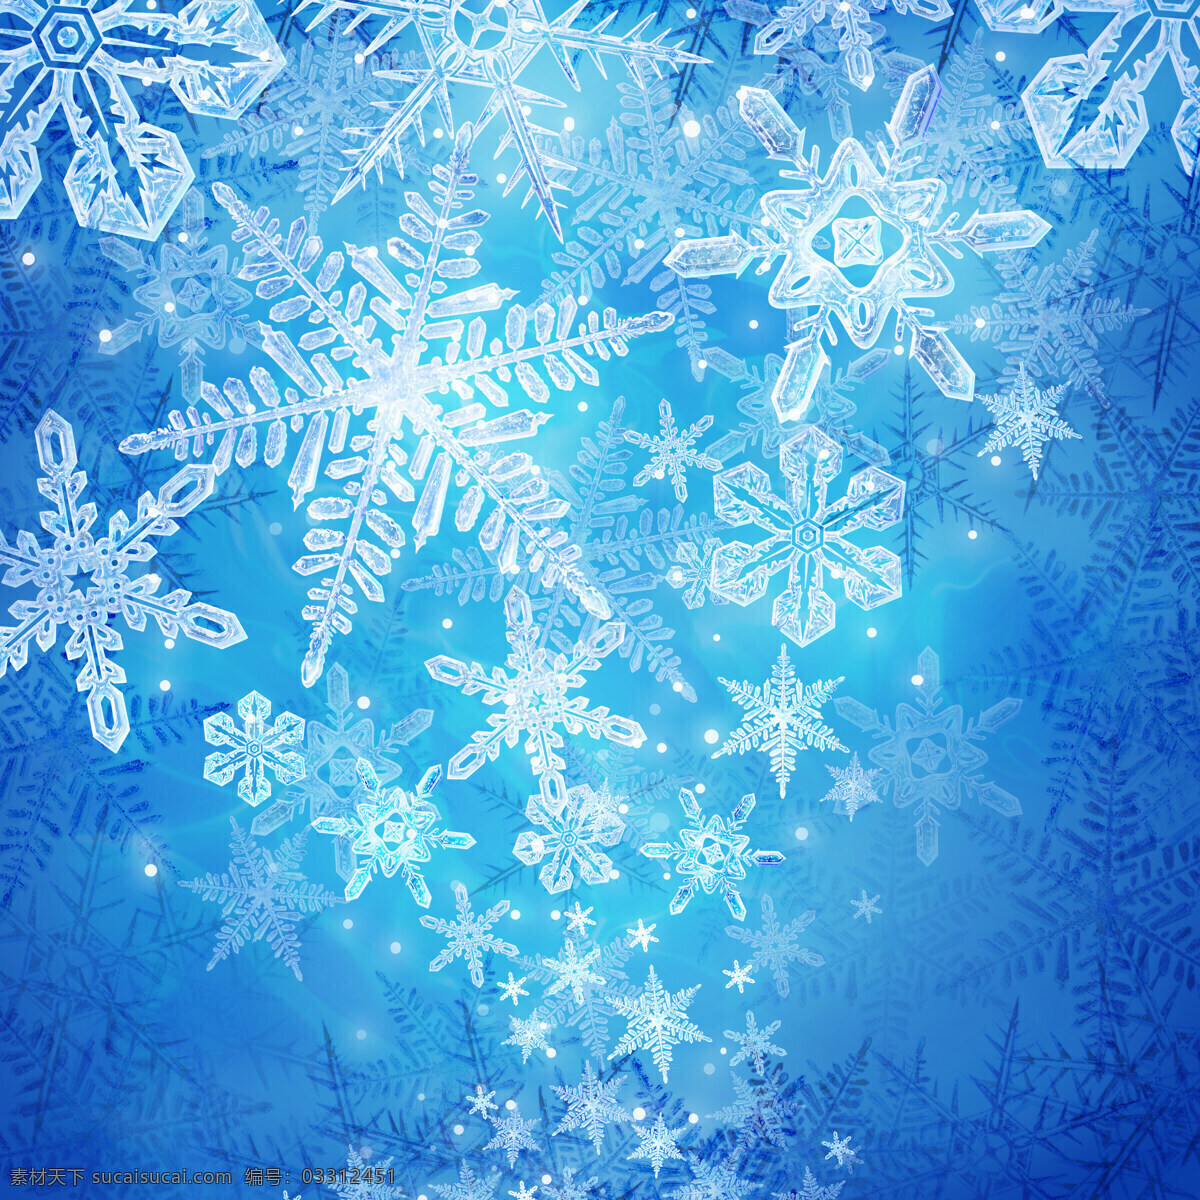 高清 圣诞 背景 雪花 蓝色 白色 冰晶